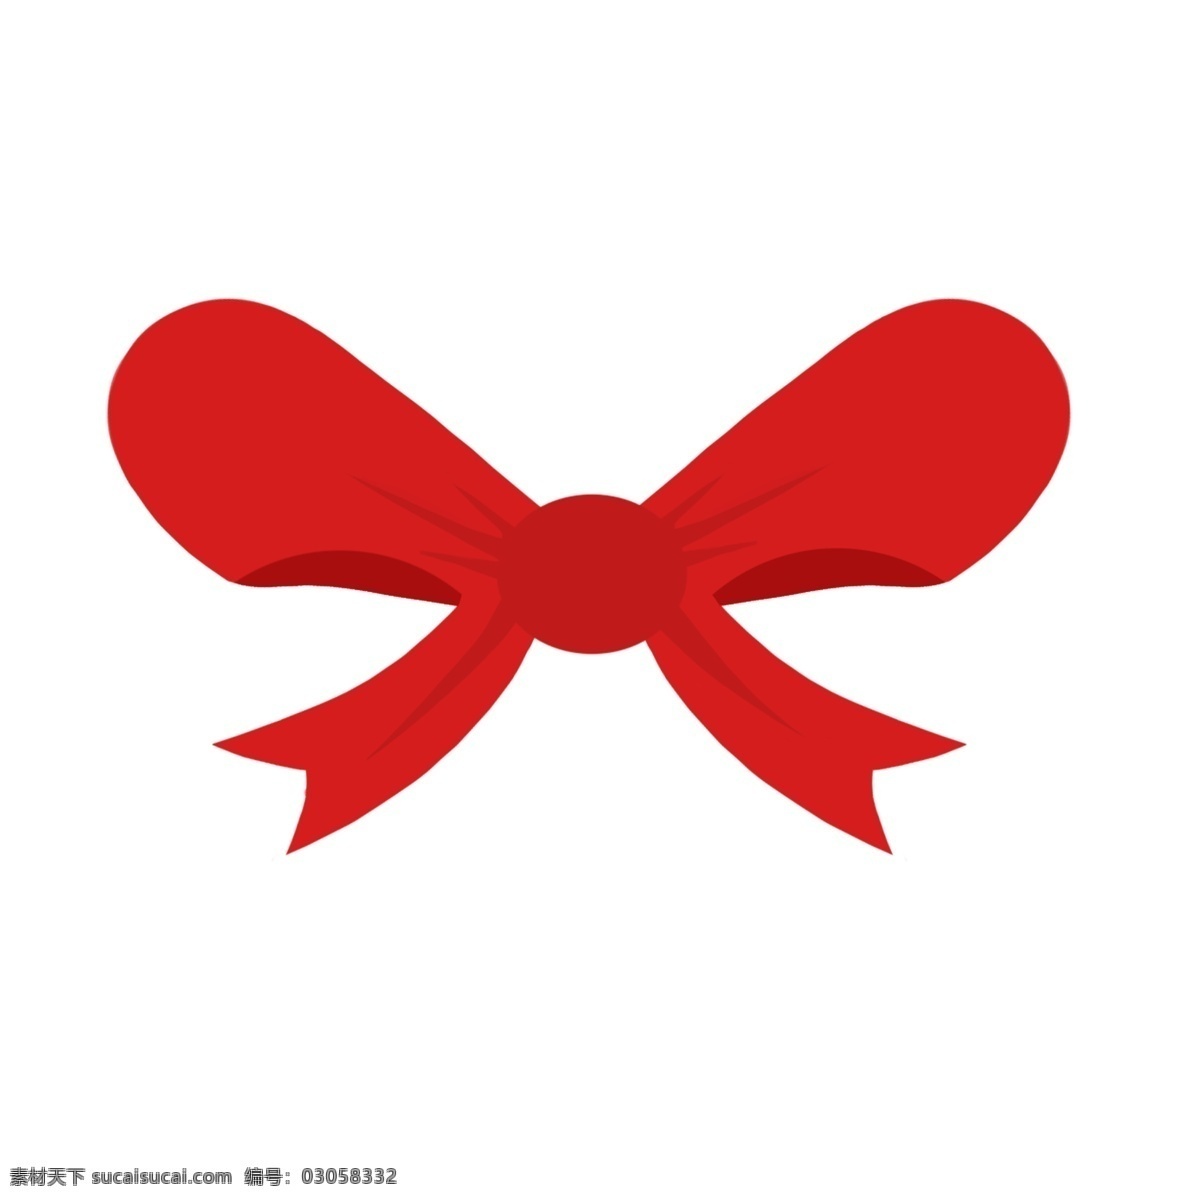 红色 卡通 蝴蝶结 装饰 礼物彩带 电商彩带 创意彩带 彩带 礼品盒 包装